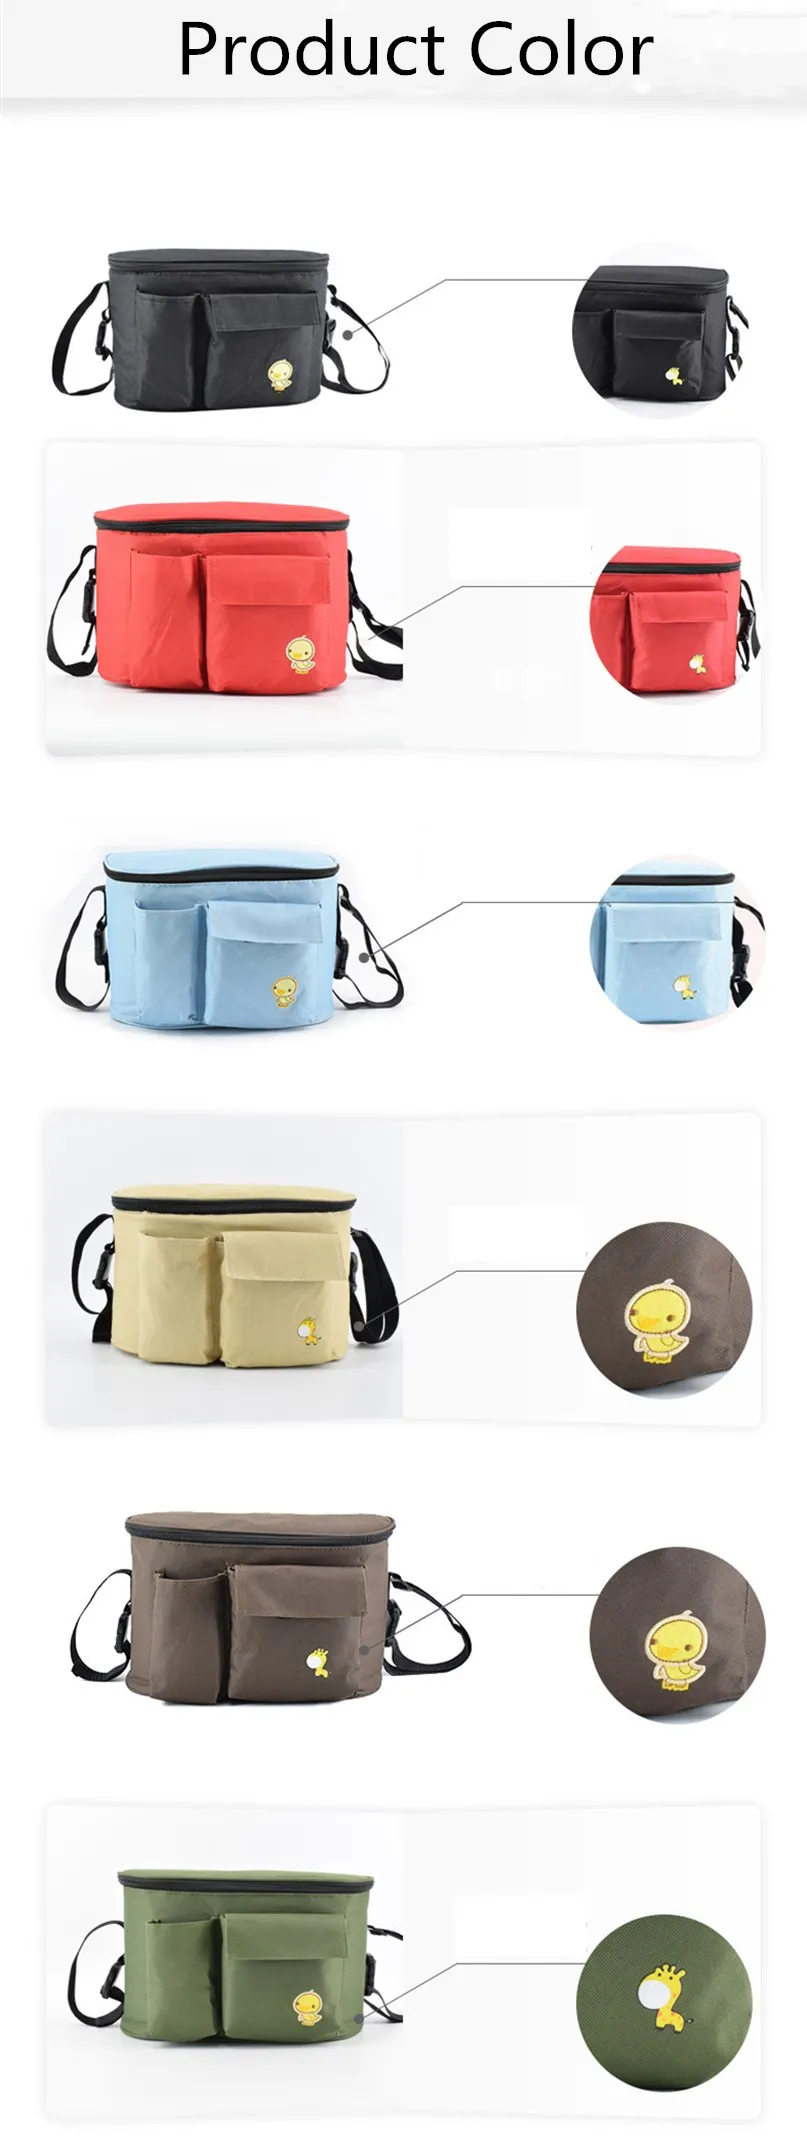 Детский Колясочный Органайзер подгузники сумка Mama коляска сумка для клюшек крючок для корзин рюкзак аксессуары для коляски